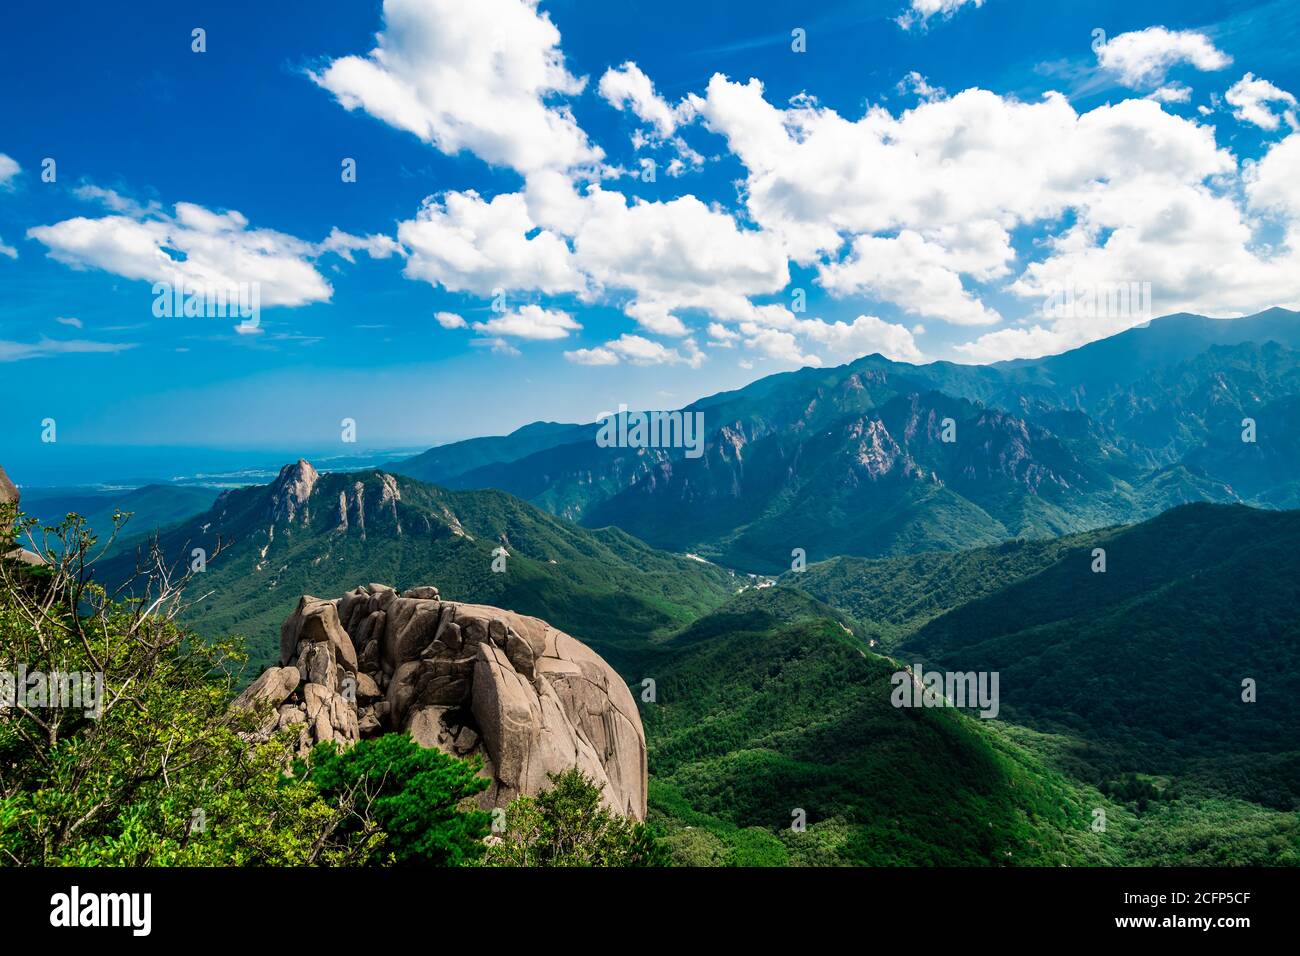 Las hermosas y pintorescas vistas desde la Roca Ulsan Bawi en el Parque Nacional Seoraksan en Sokcho, Corea del Sur. Foto de stock